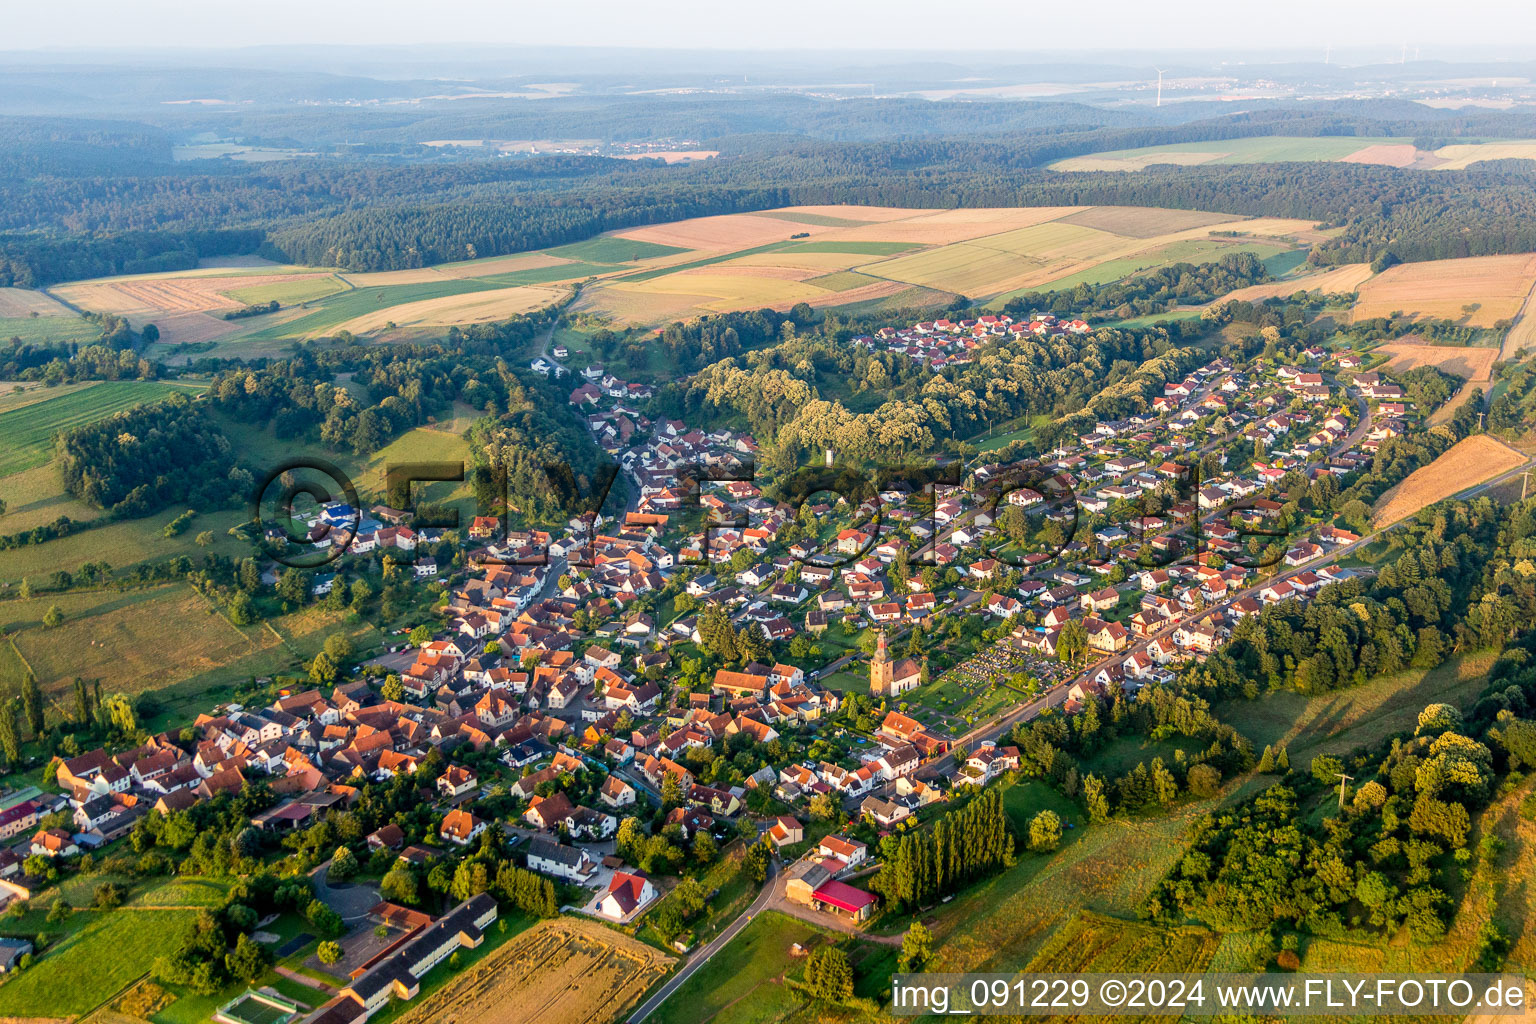 Luftbild von Dorf - Ansicht am Rande von landwirtschaftlichen Feldern und Nutzflächen in Sippersfeld im Bundesland Rheinland-Pfalz, Deutschland